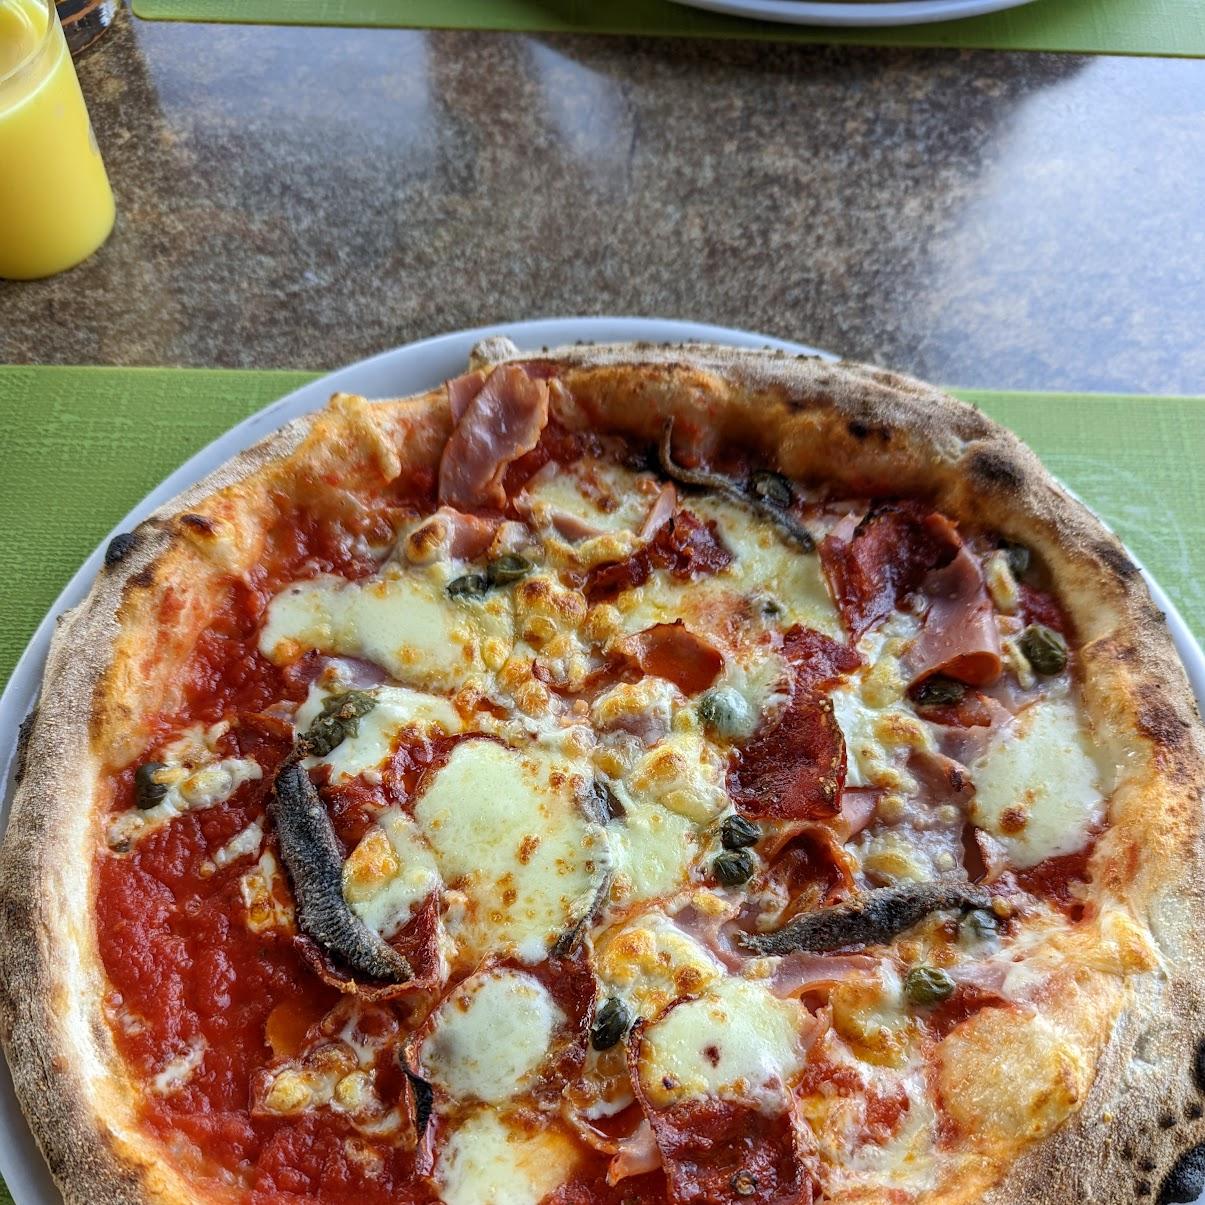 Restaurant "Ristorante Pizzeria da Tony’s" in Gengenbach